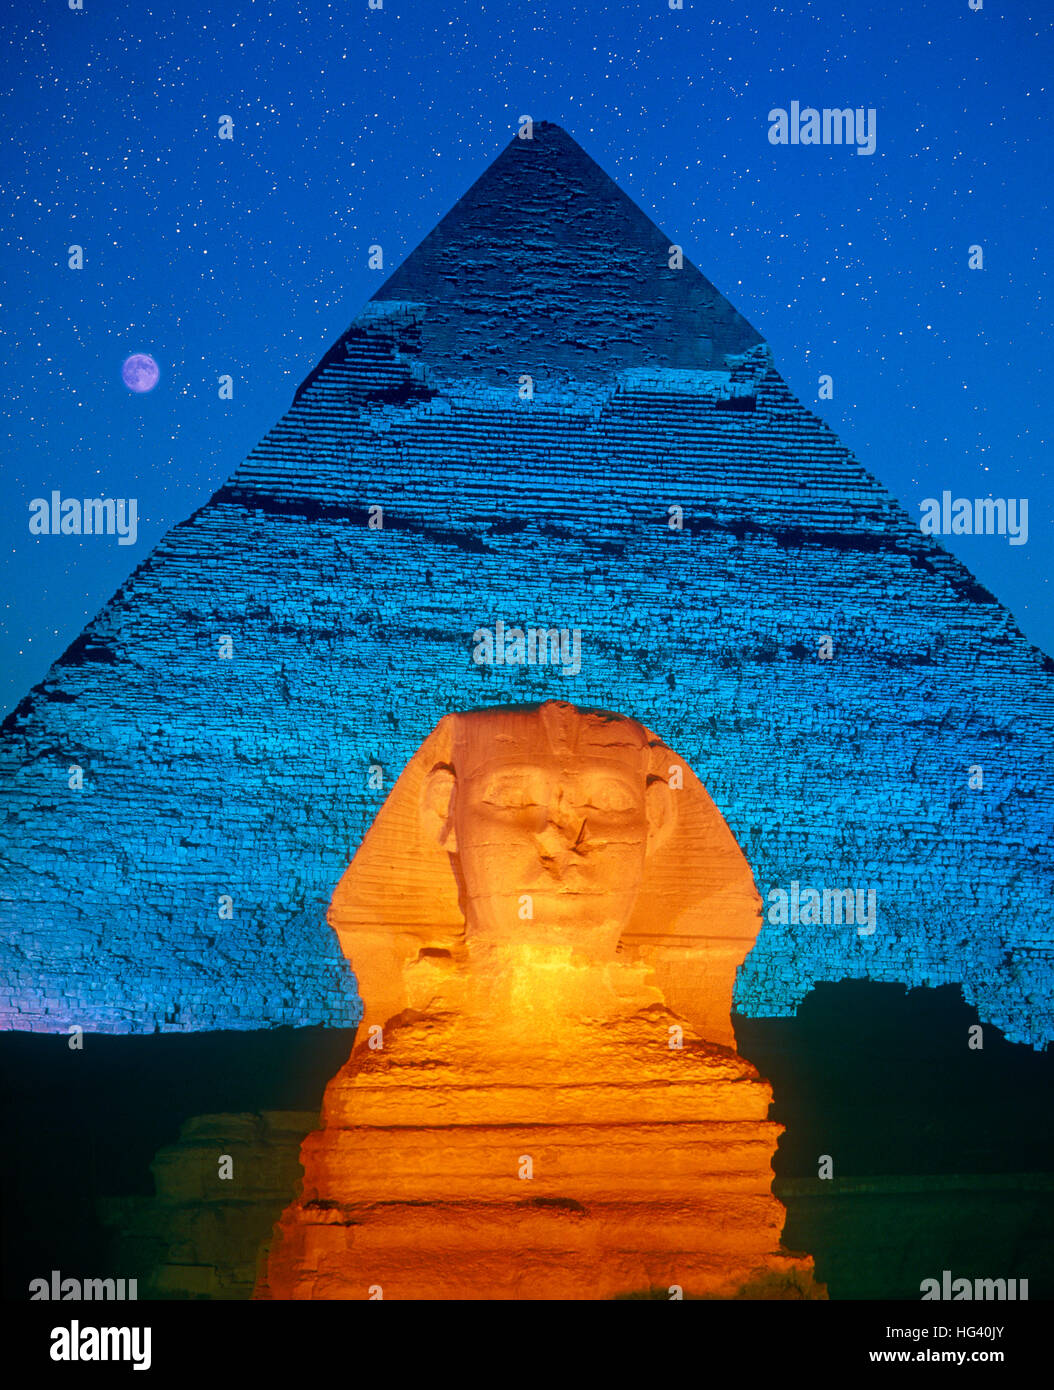 La luna in un cielo stellato durante il figlio et Lumiere presso la Sfinge e la Piramide di Giza, Cairo, Egitto. Foto Stock